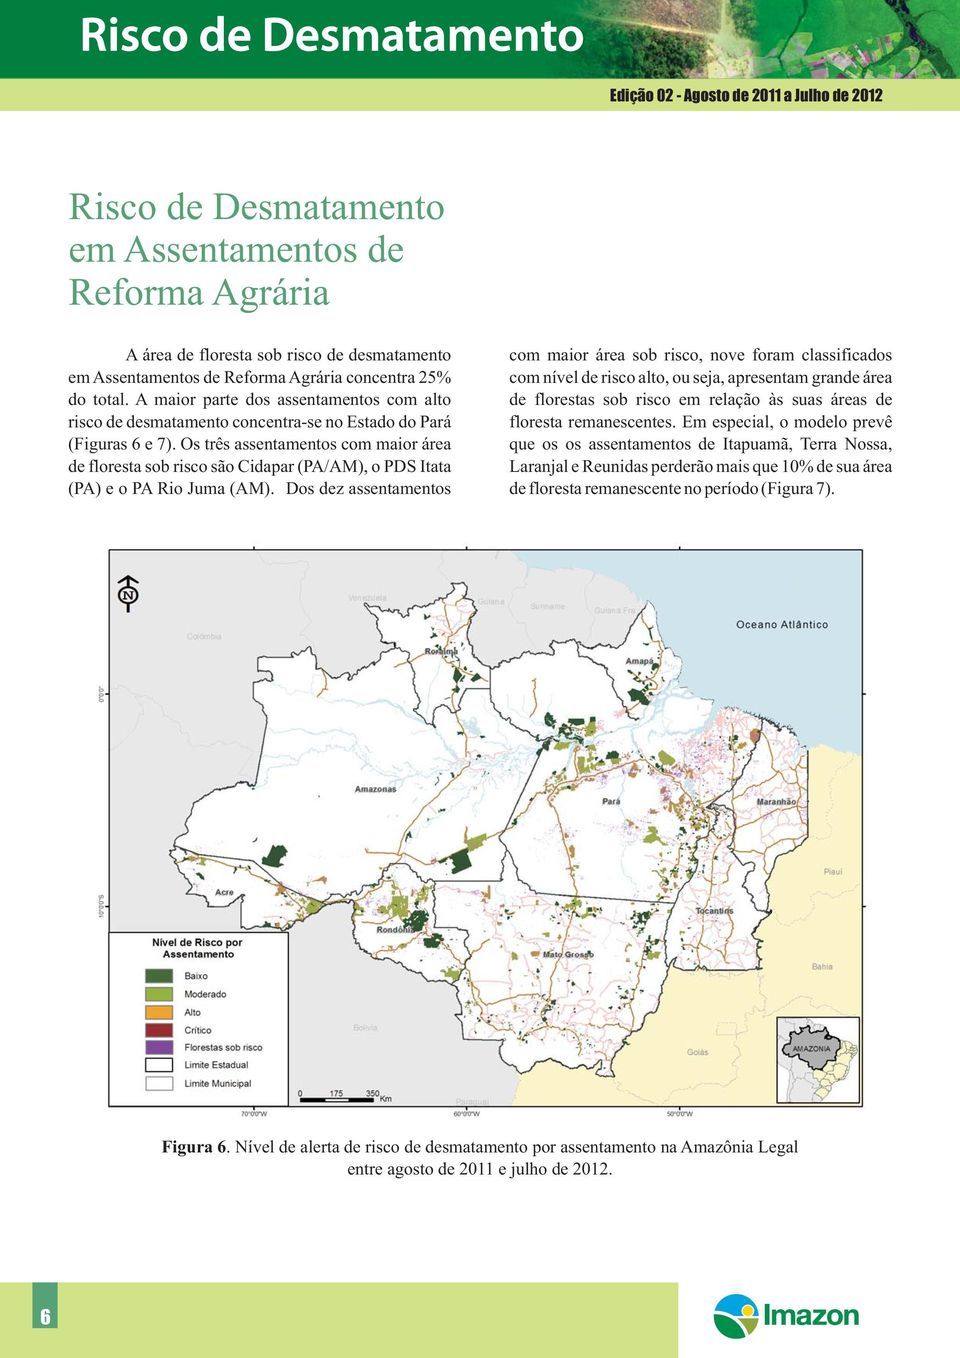 Os três assentamentos com maior área de floresta sob risco são Cidapar (PA/AM), o PDS Itata (PA) e o PA Rio Juma (AM).